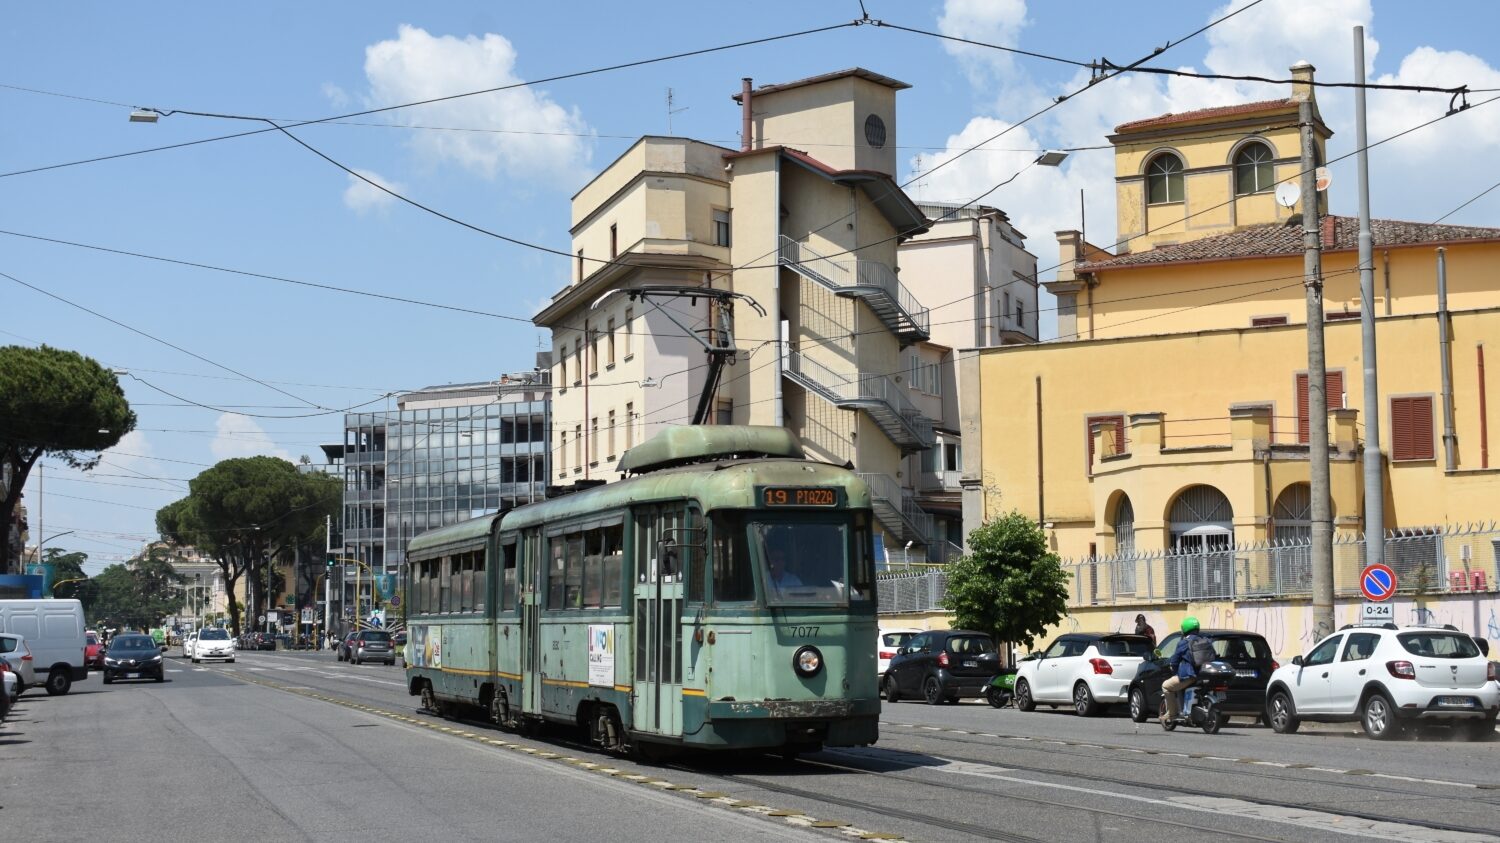 Bez poválečných vozů Treno Articolato Stanga (TAS) řady 7000 se v Římě ani dnes neobejdou. V provozu jich má sloužit 39 z 58 vyrobených. (foto: Libor Hinčica)